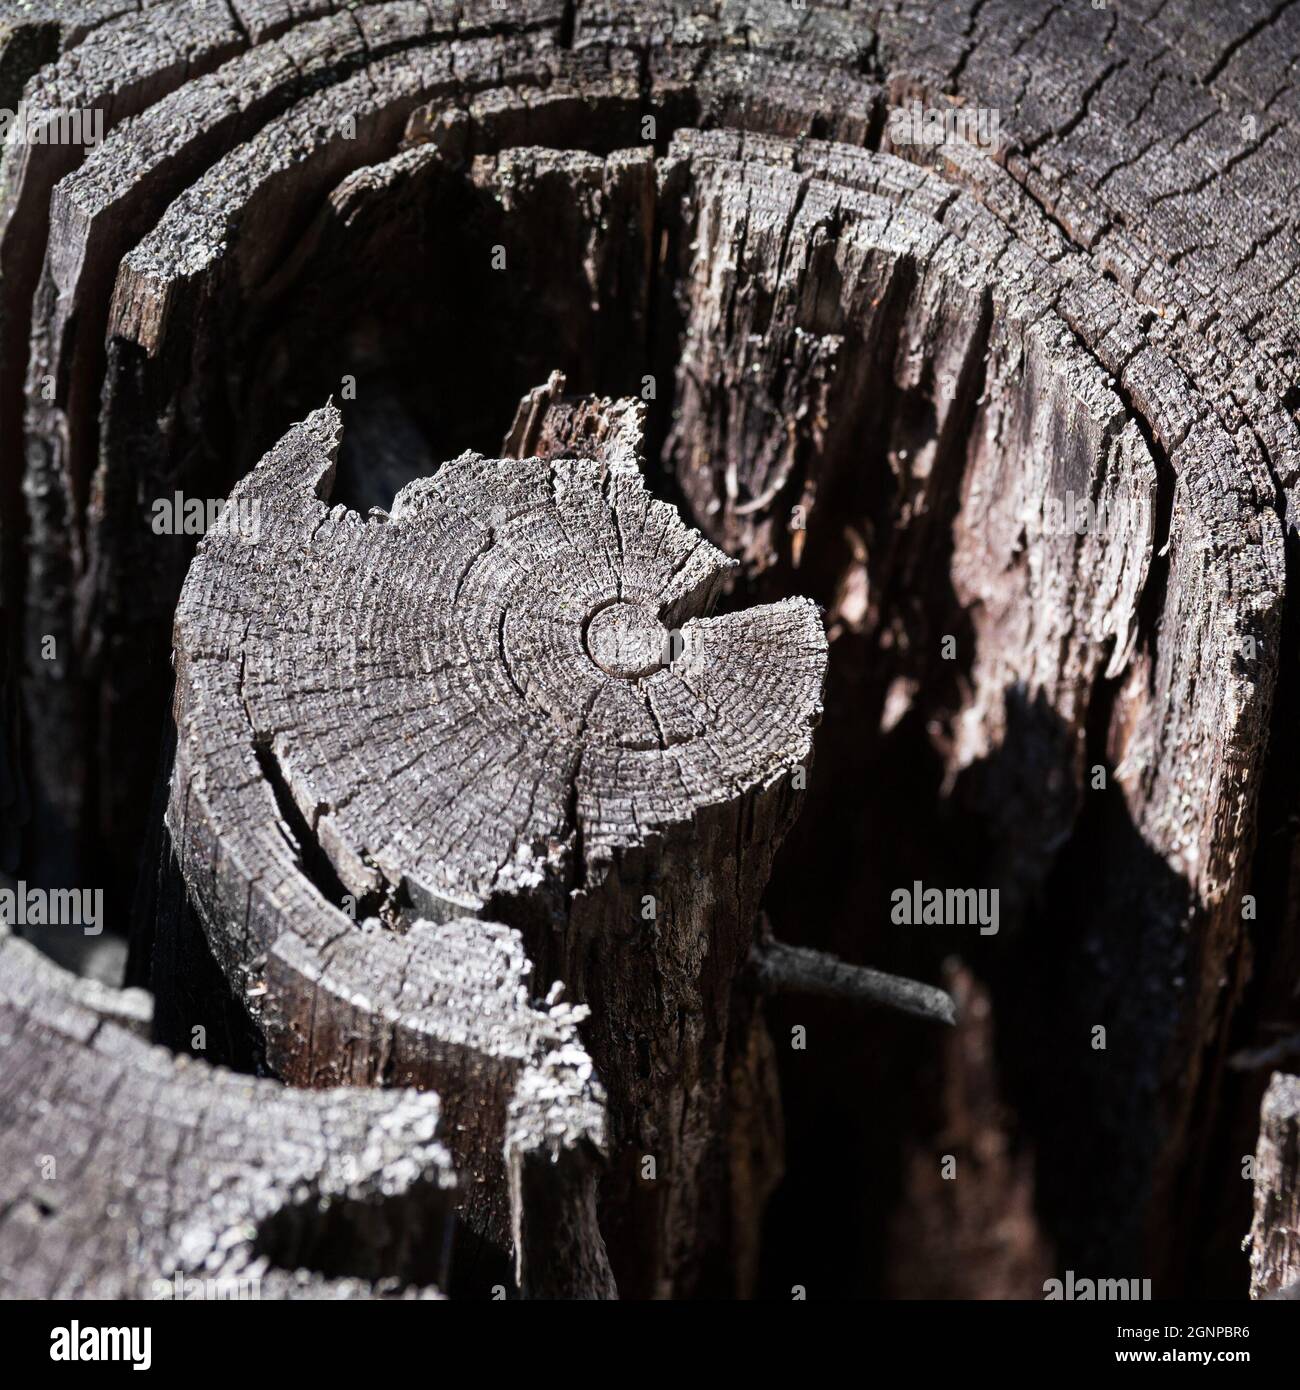 Antiguo tocón de árbol con anillos anuales cerca, profundidad de campo poco profunda Foto de stock